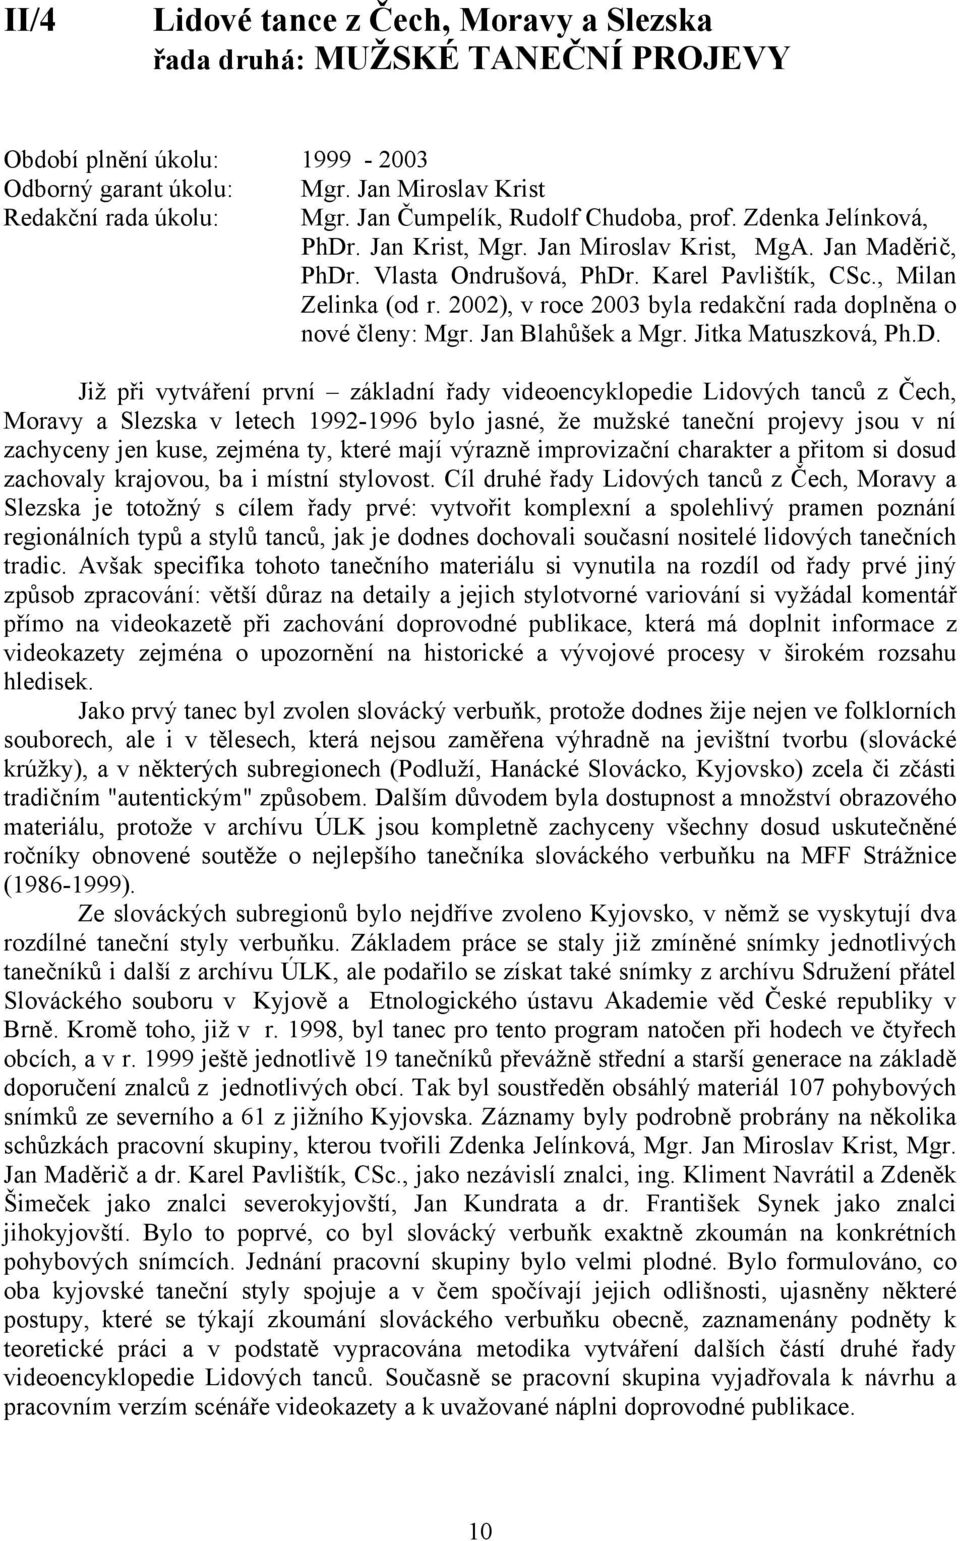 2002), v roce 2003 byla redakční rada doplněna o nové členy: Mgr. Jan Blahůšek a Mgr. Jitka Matuszková, Ph.D.